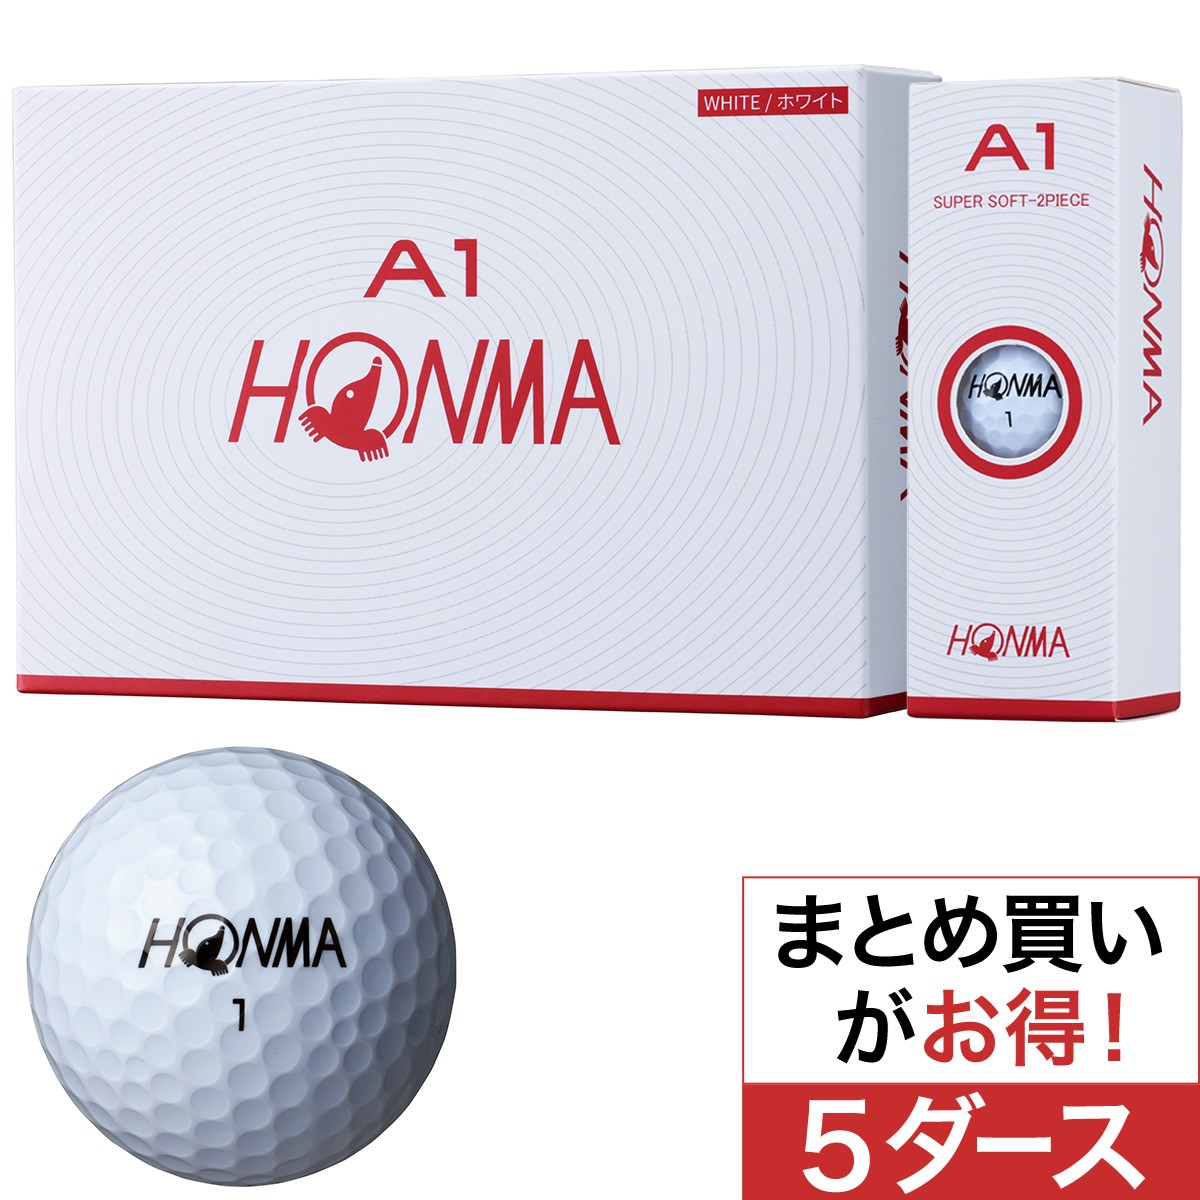 本間ゴルフ(HONMA GOLF) A1 ボール 5ダースセット 